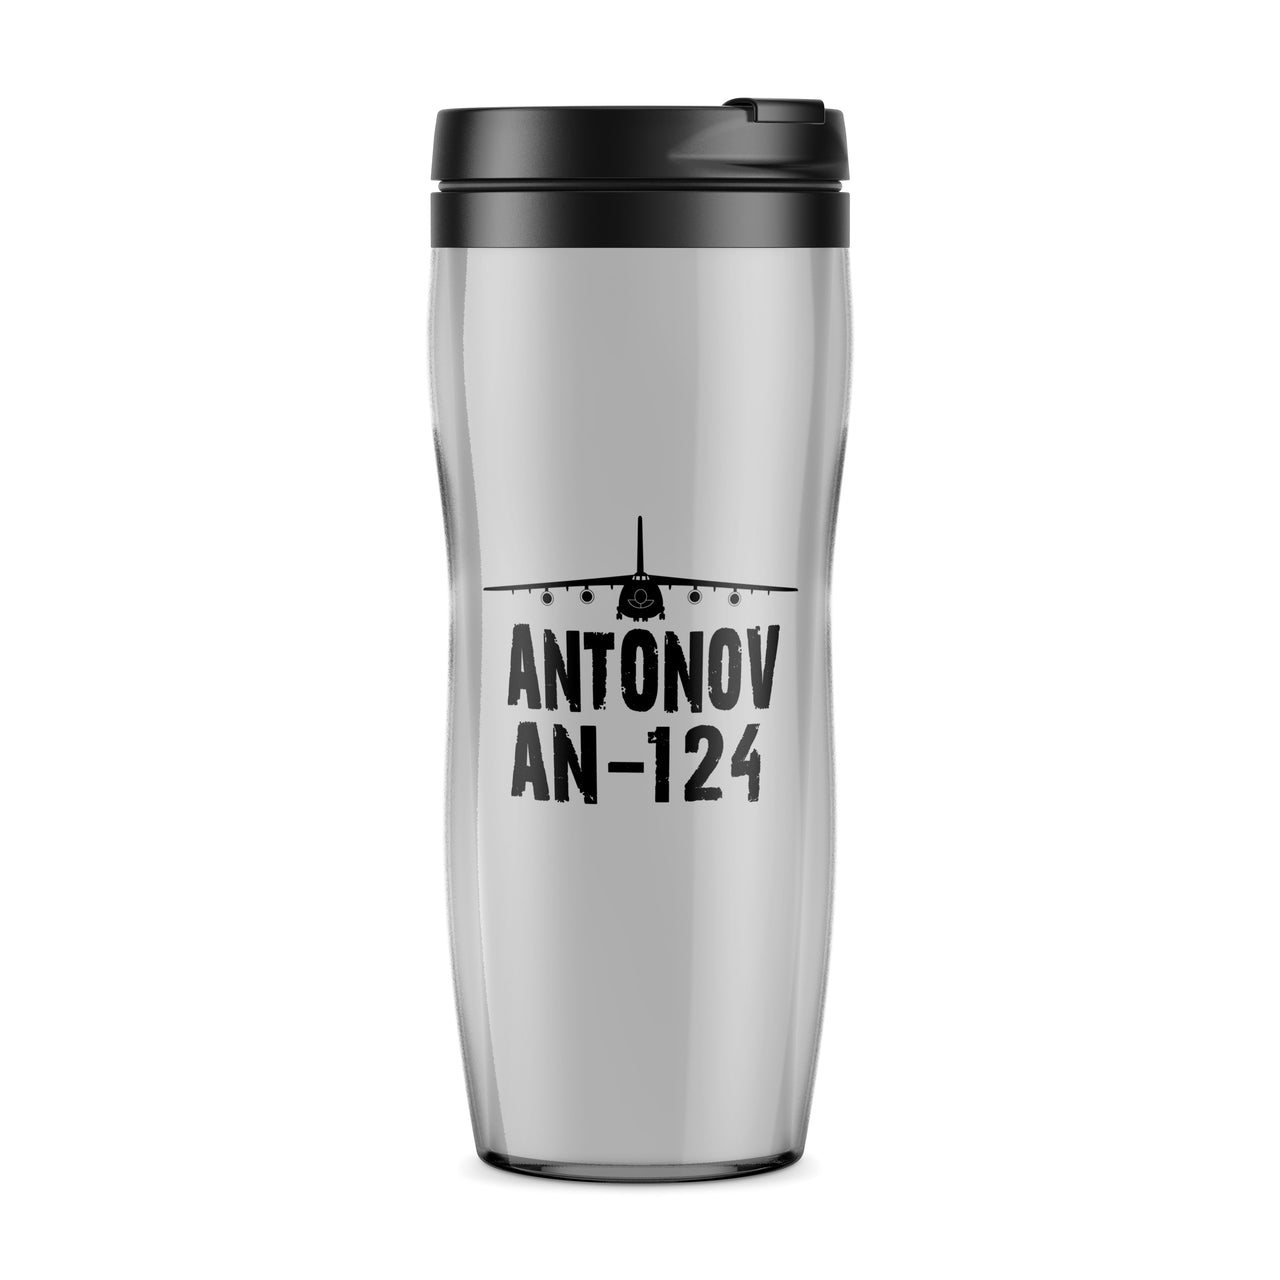 Antonov AN-124 & Plane Designed Travel Mugs